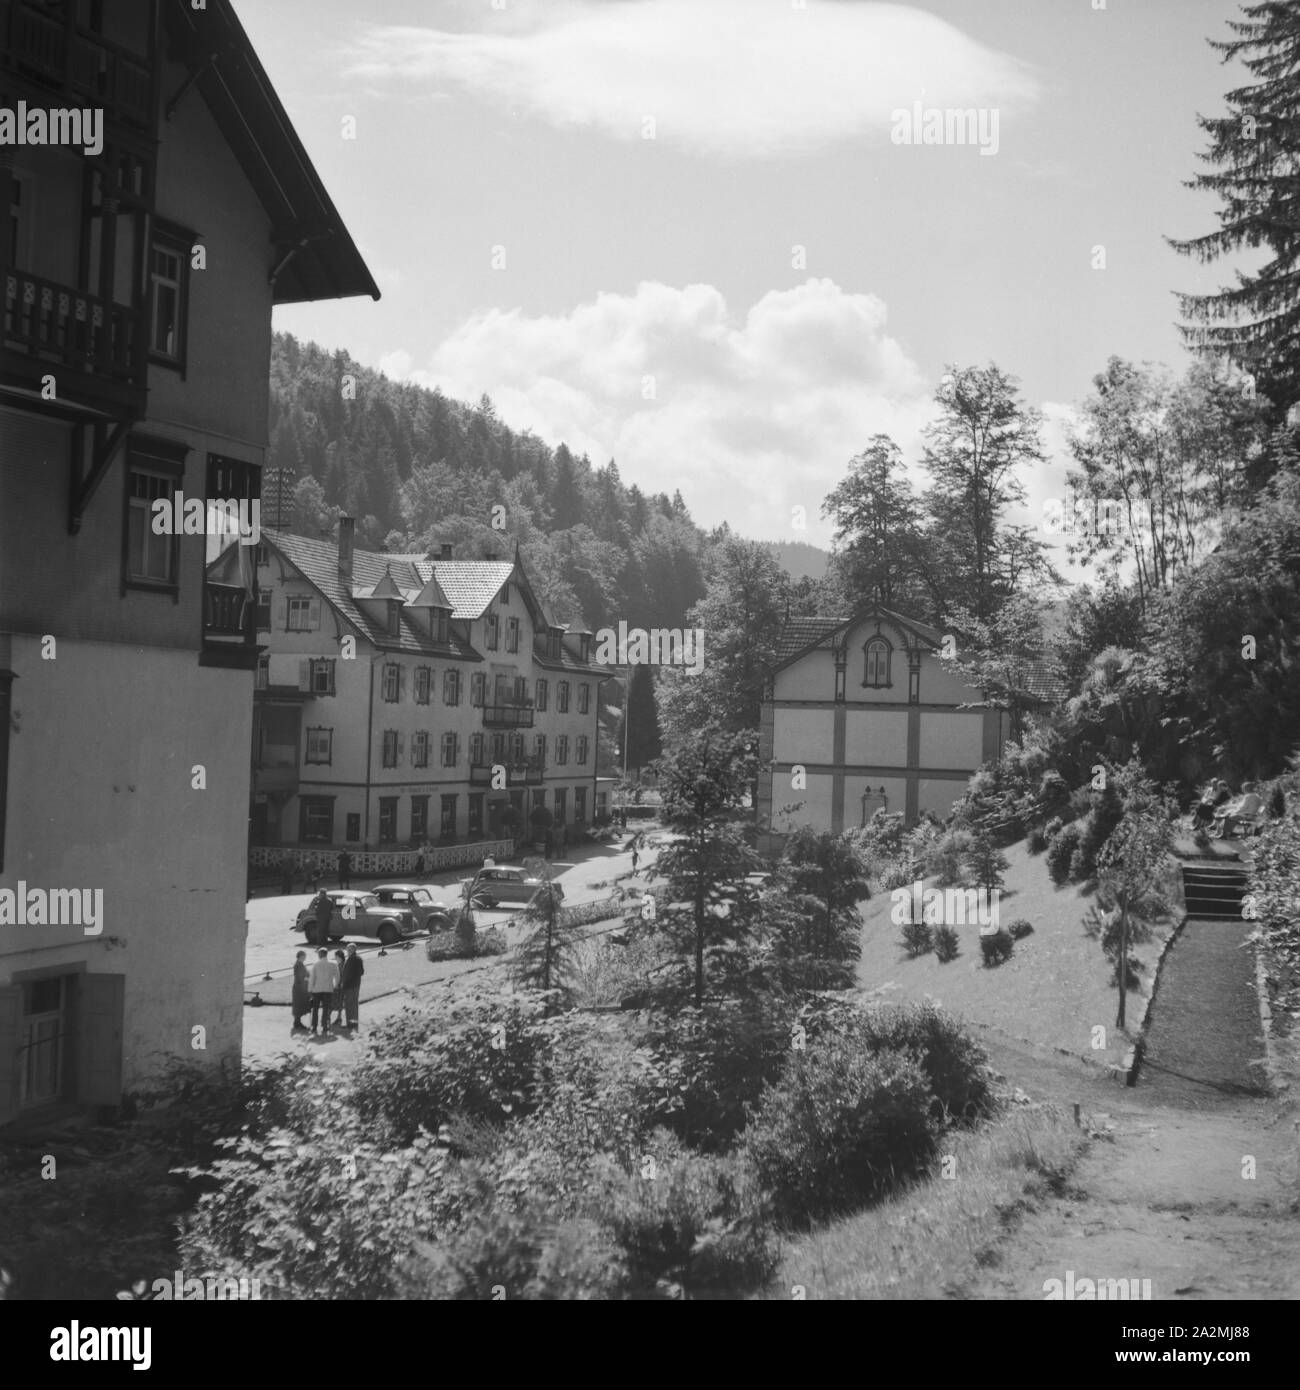 Kurhotels in einem Kurort, Deutschland 1930er Jahre. Spa hotel in una località termale, Germania 1930s. Foto Stock